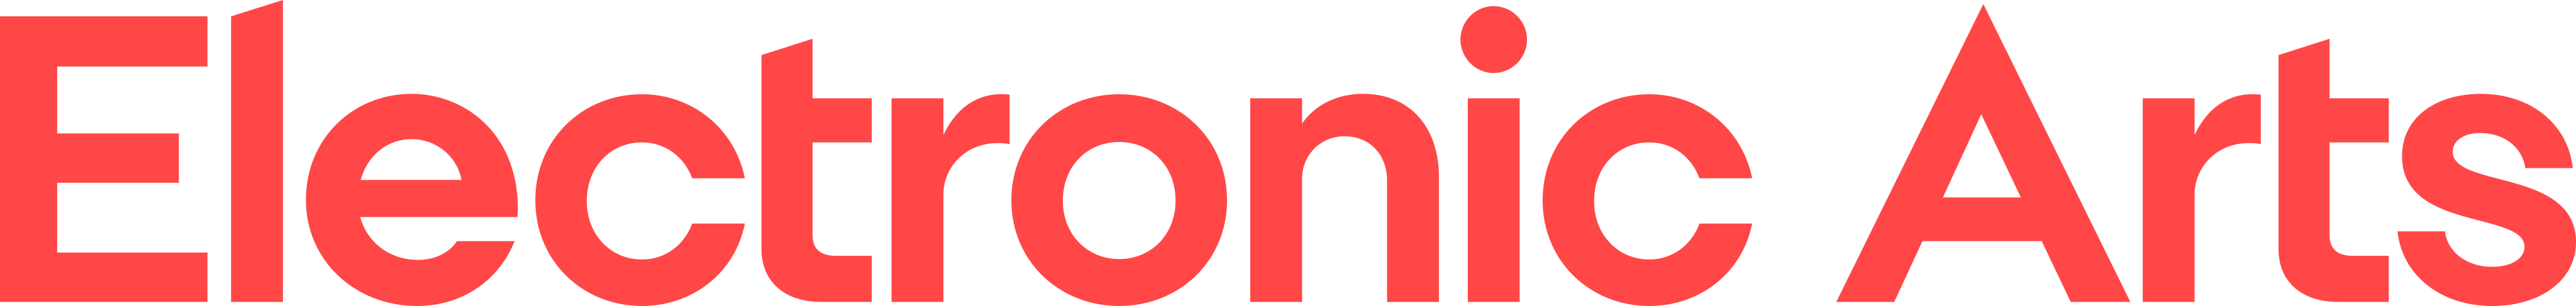 electronic arts logo 2 - Electronic Arts Logo